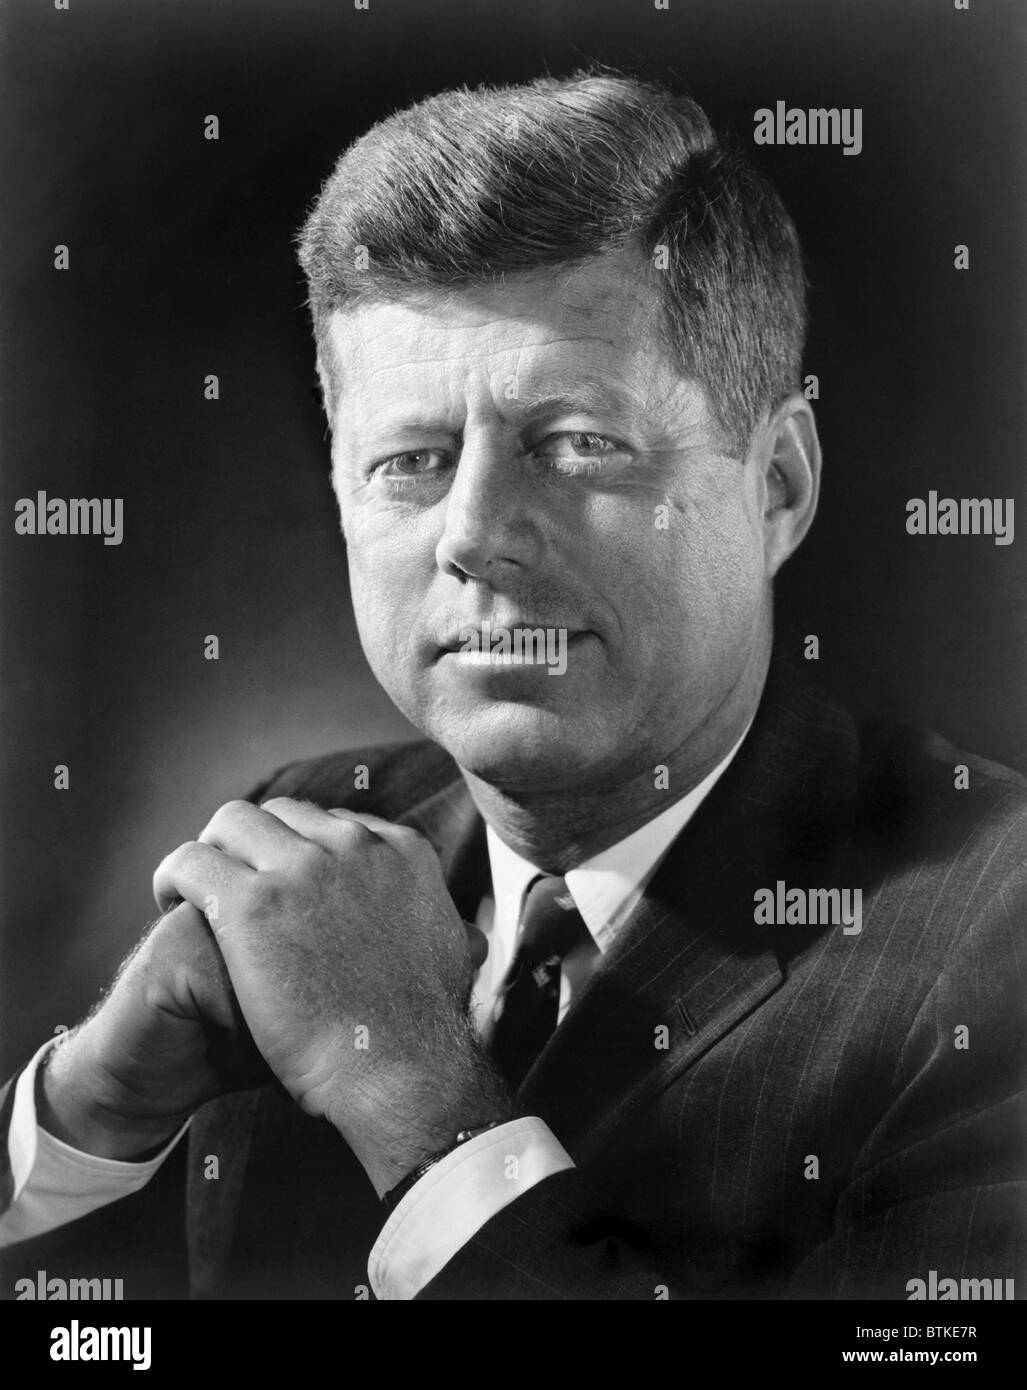 President John F. Kennedy in a 1961 portrait. Stock Photo